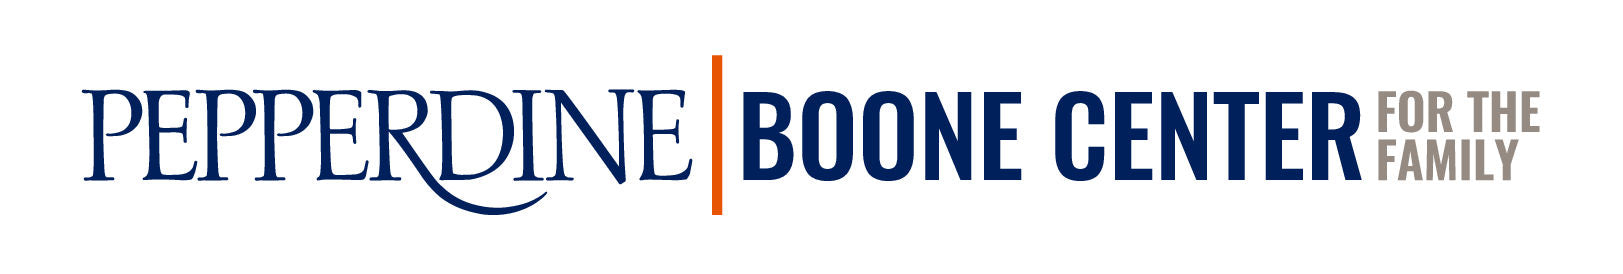 Pepperdine, Boone Center for the Family logo.